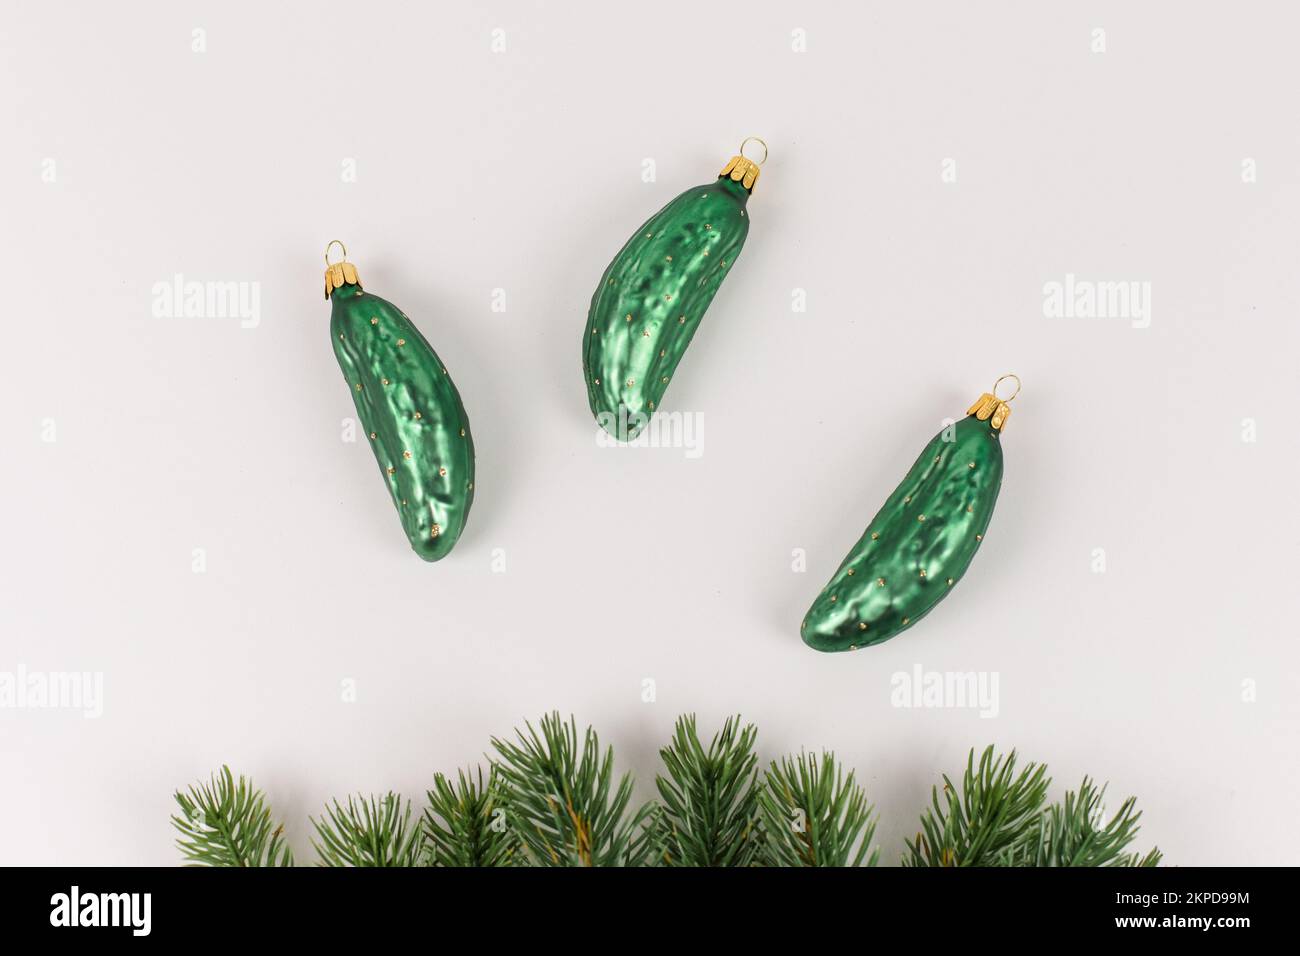 Drei Weihnachtsbaumkugeln in Form einer Gurke liegen auf weißem Hintergrund. Tannenäste schmücken das Bild. Stockfoto